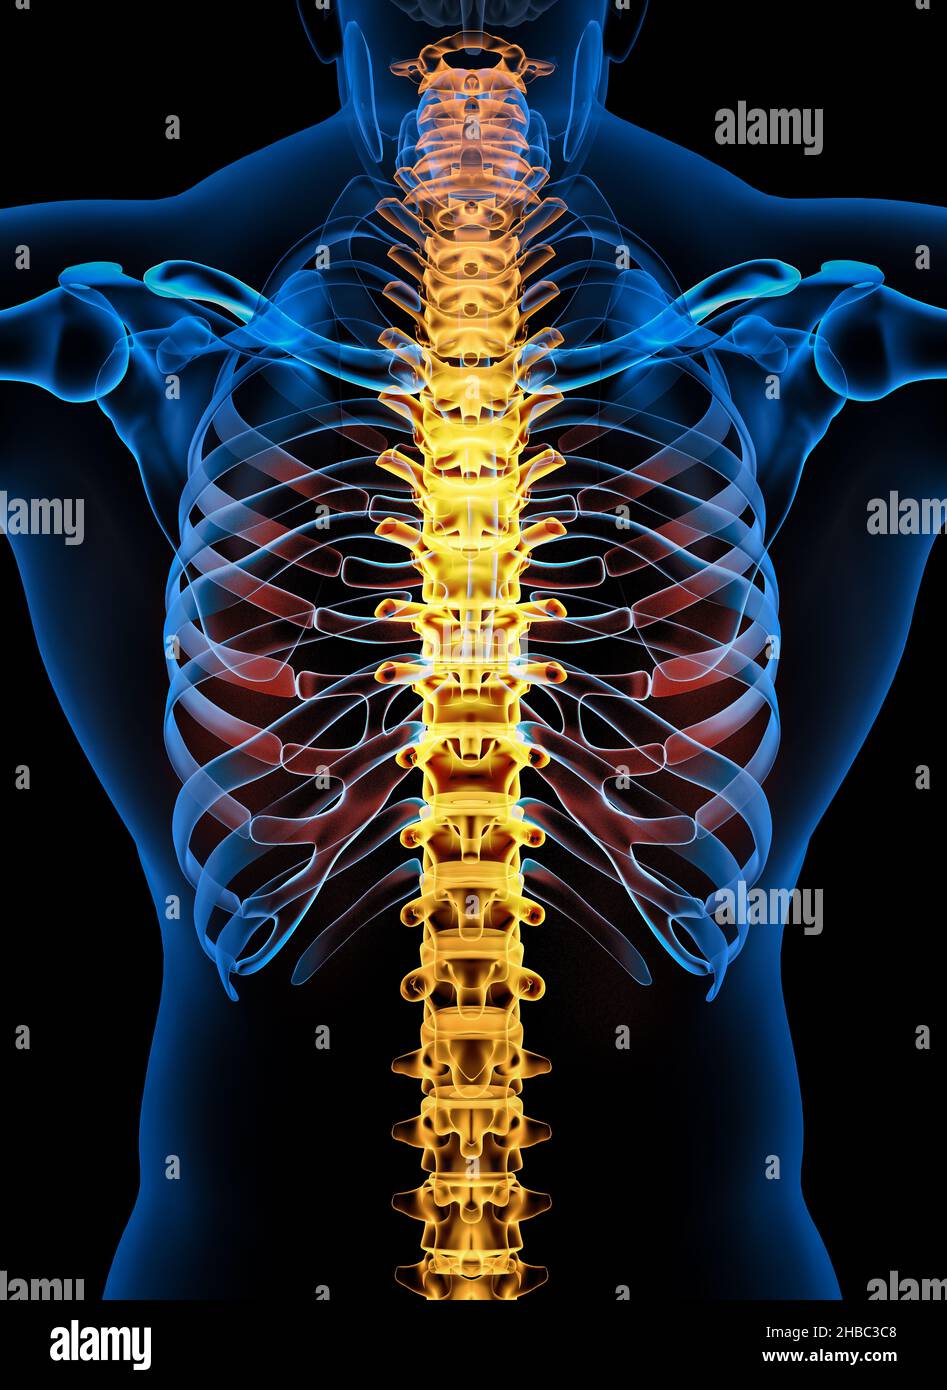 Skelett Wirbelsäule des menschlichen Skelettsystems Anatomie. Vorderansicht - Abbildung 3D Stockfoto